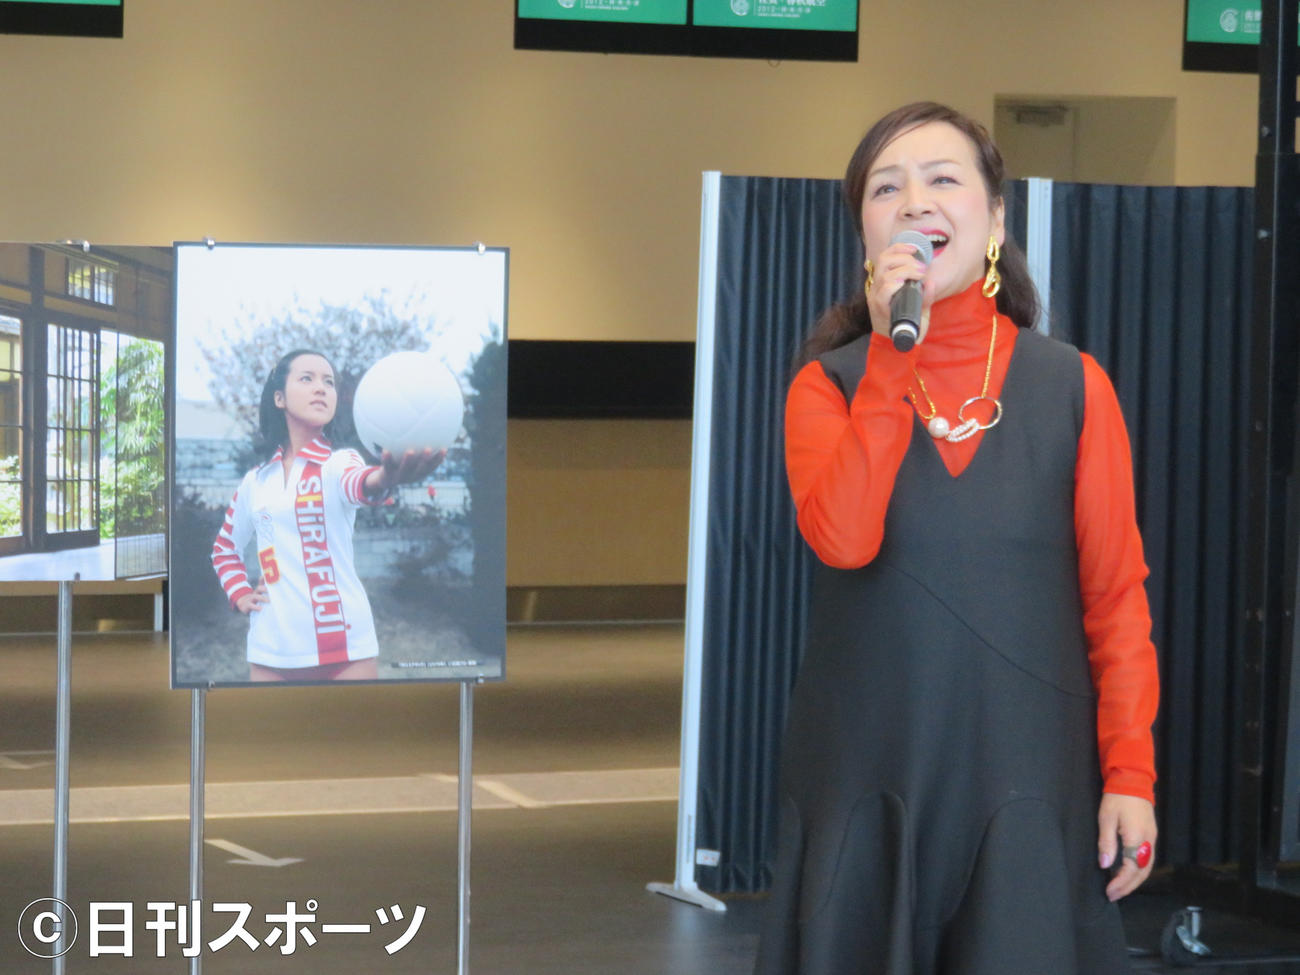 「佐賀－上海就航線10周年企画『中国路線プロモーション』」イベントで「燃えろアタック」の主題歌を歌う荒木由美子